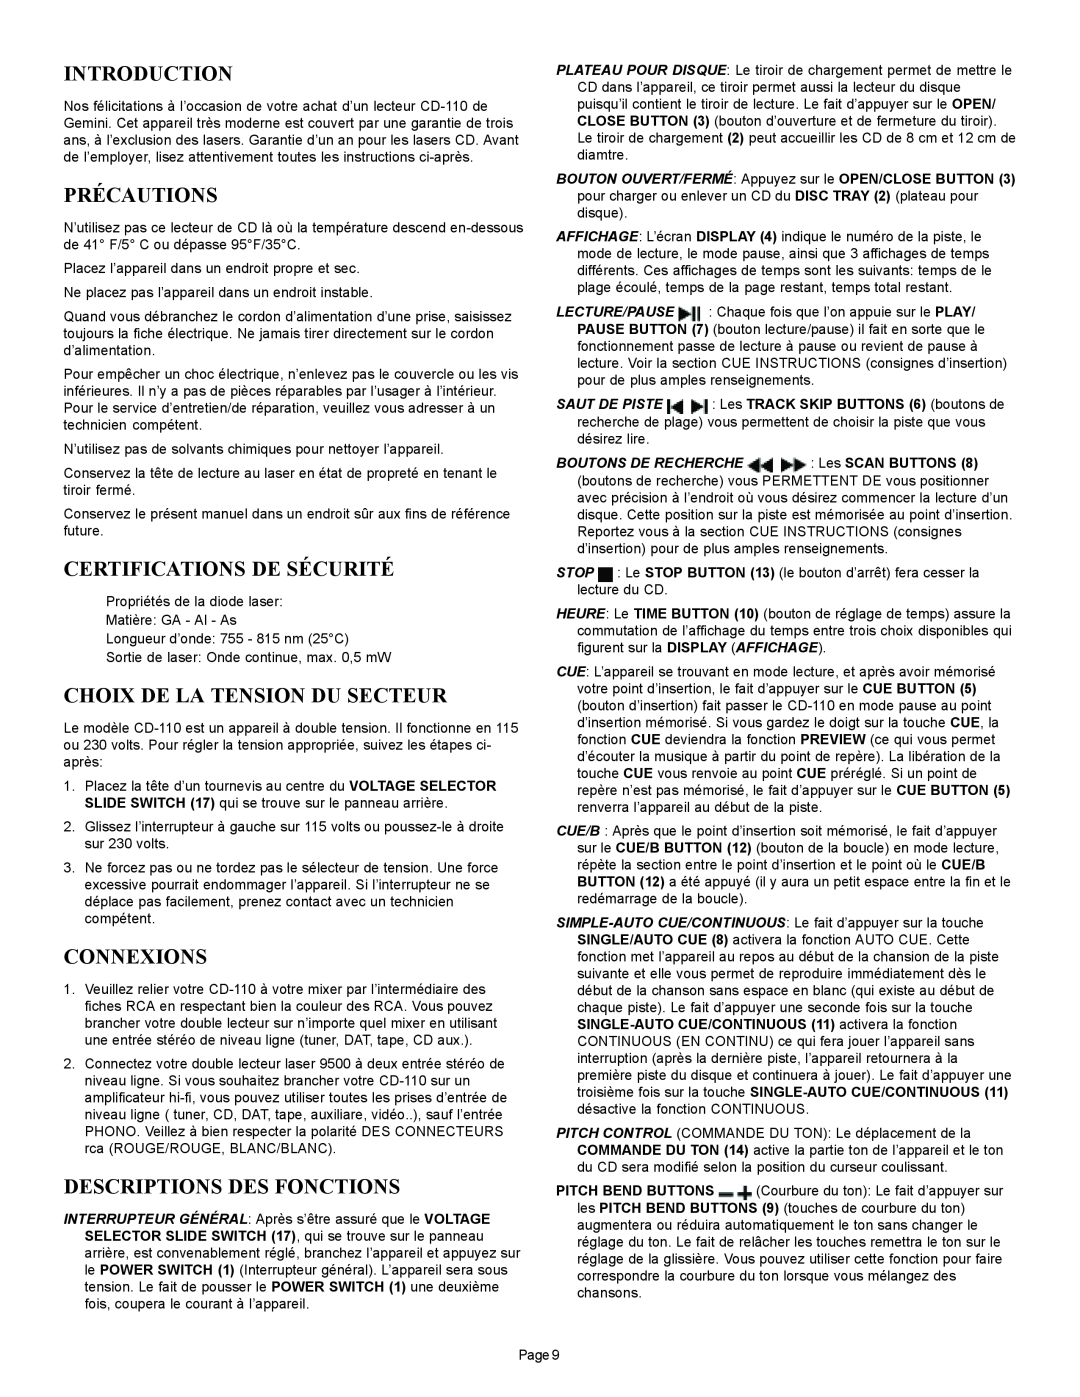 Gemini CD-110 manual Précautions, Certifications De Sécurité, Choix De La Tension Du Secteur, Connexions, Introduction 